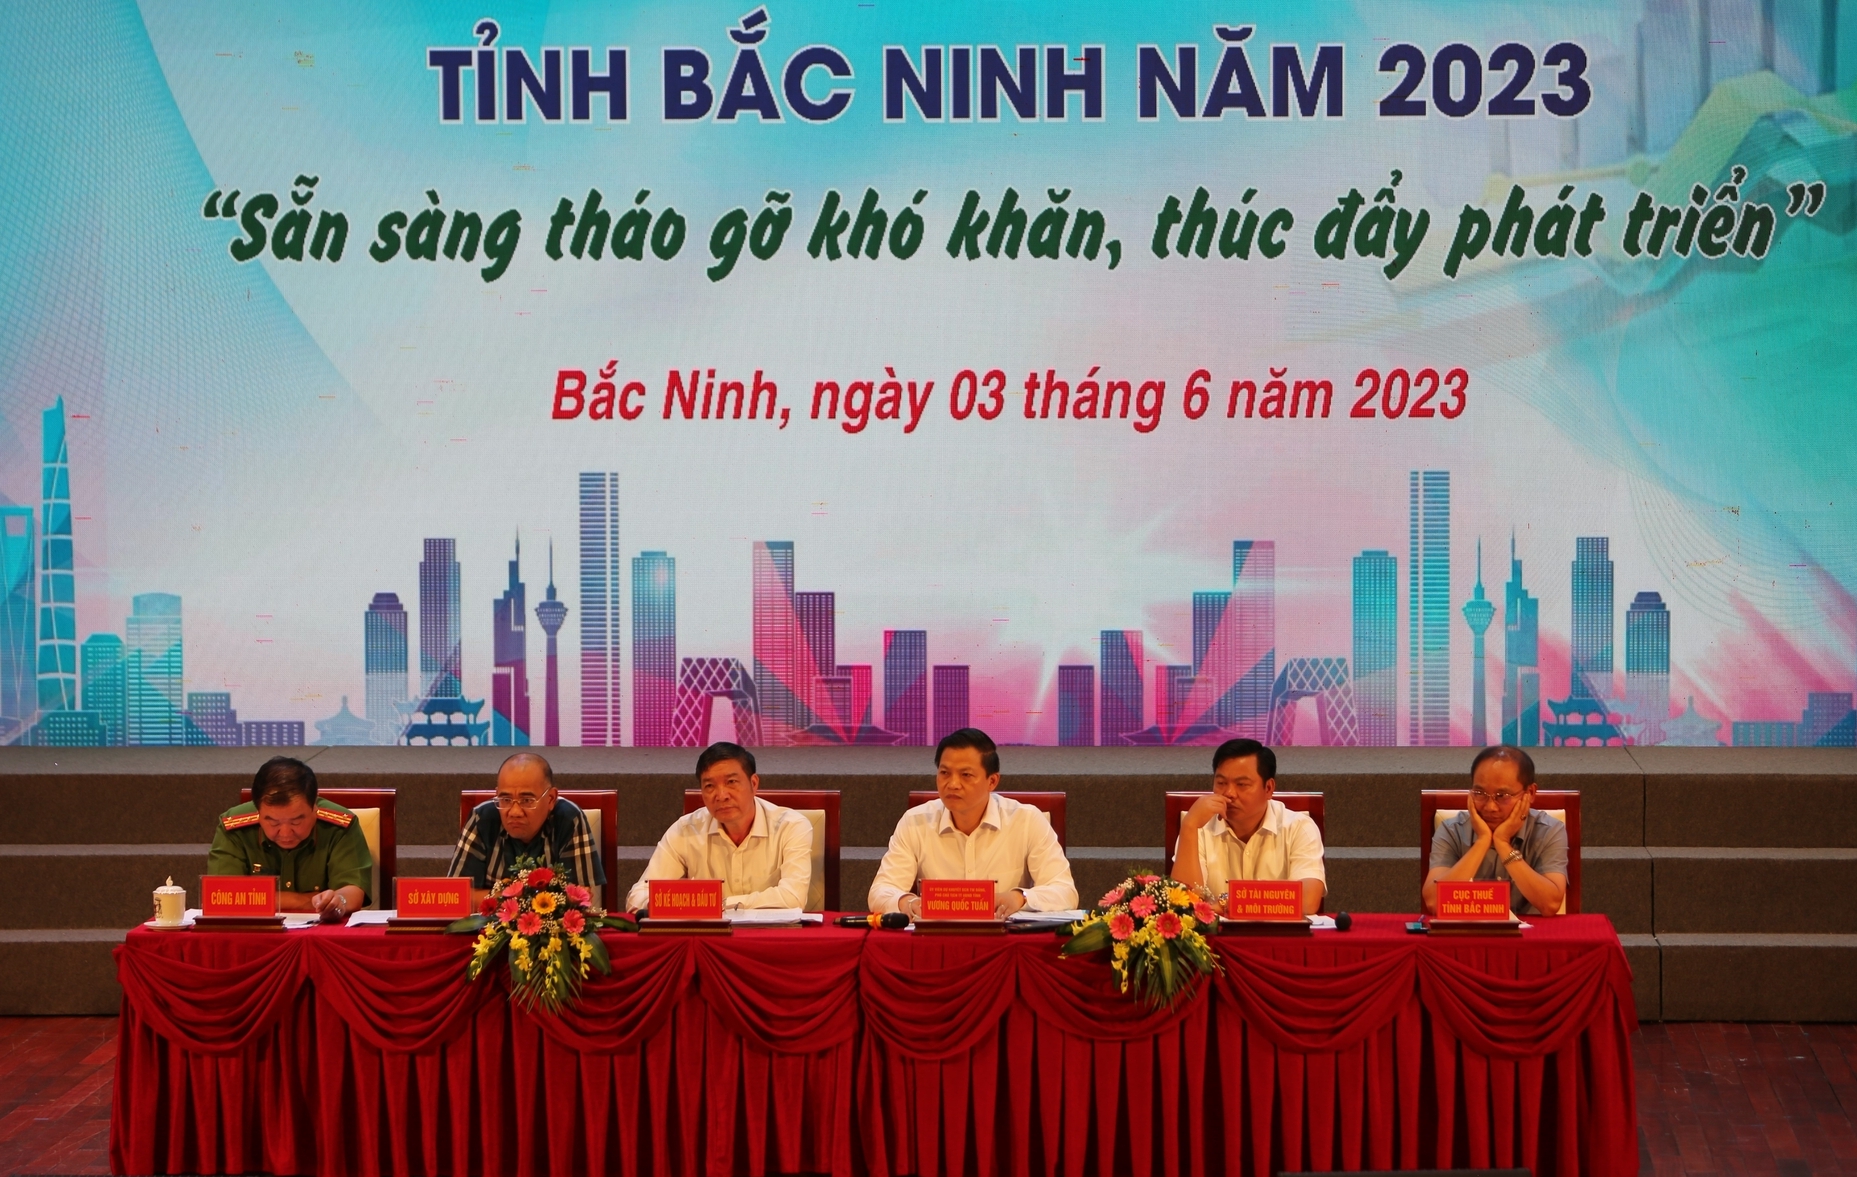 Hội nghị đối thoại với đại diện các hợp tác xã, doanh nghiệp, hộ sản xuất kinh doanh trên địa bàn tỉnh Bắc Ninh năm 2023 có chủ đề 'Sẵn sàng tháo gỡ khó khăn, thúc đẩy phát triển'. Ảnh: KL.